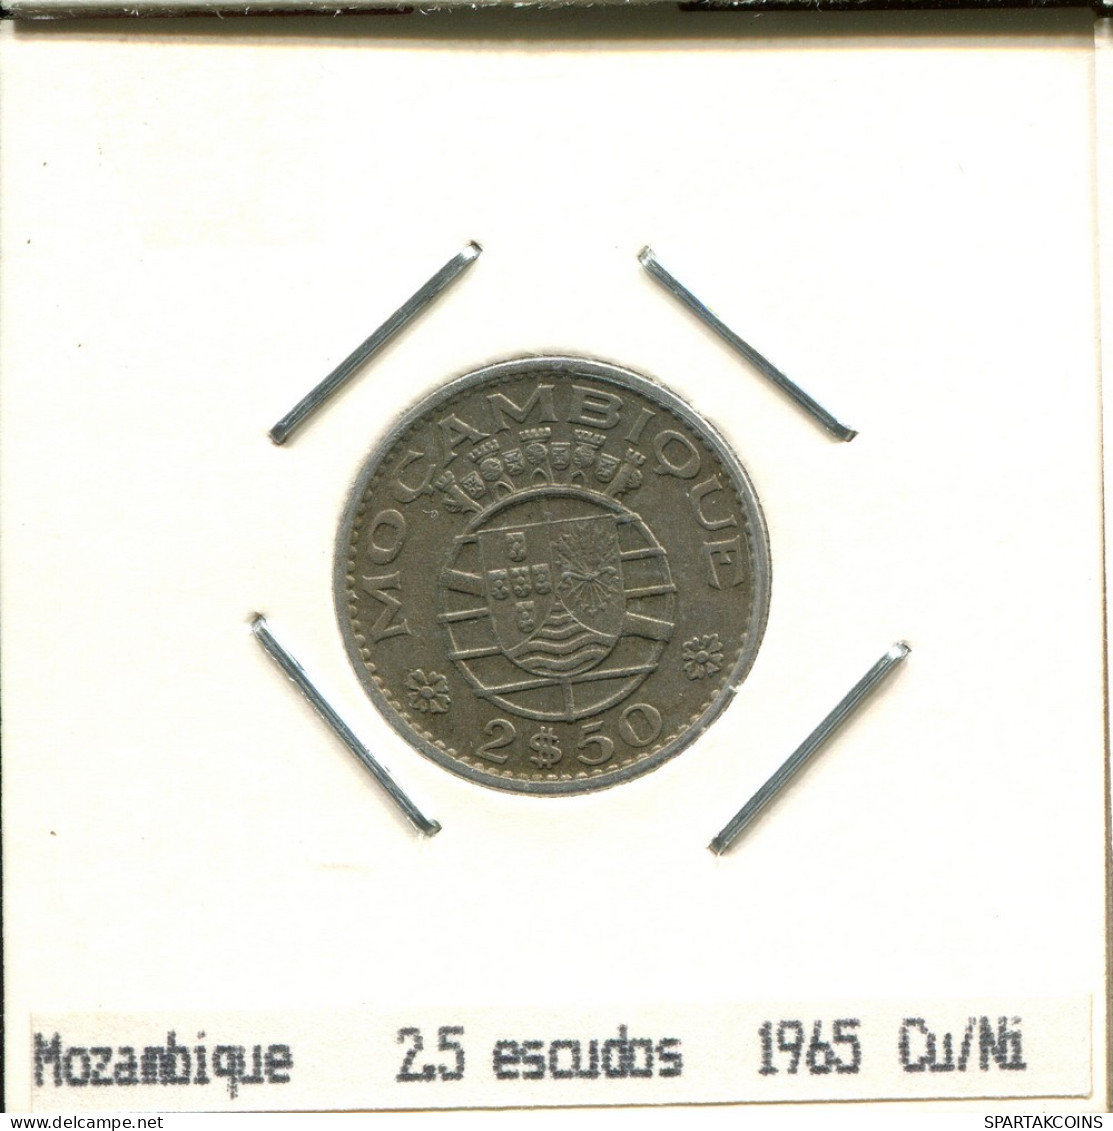 2$50 ESCUDOS 1965 MOZAMBIQUE Coin #AS413.U.A - Mozambique